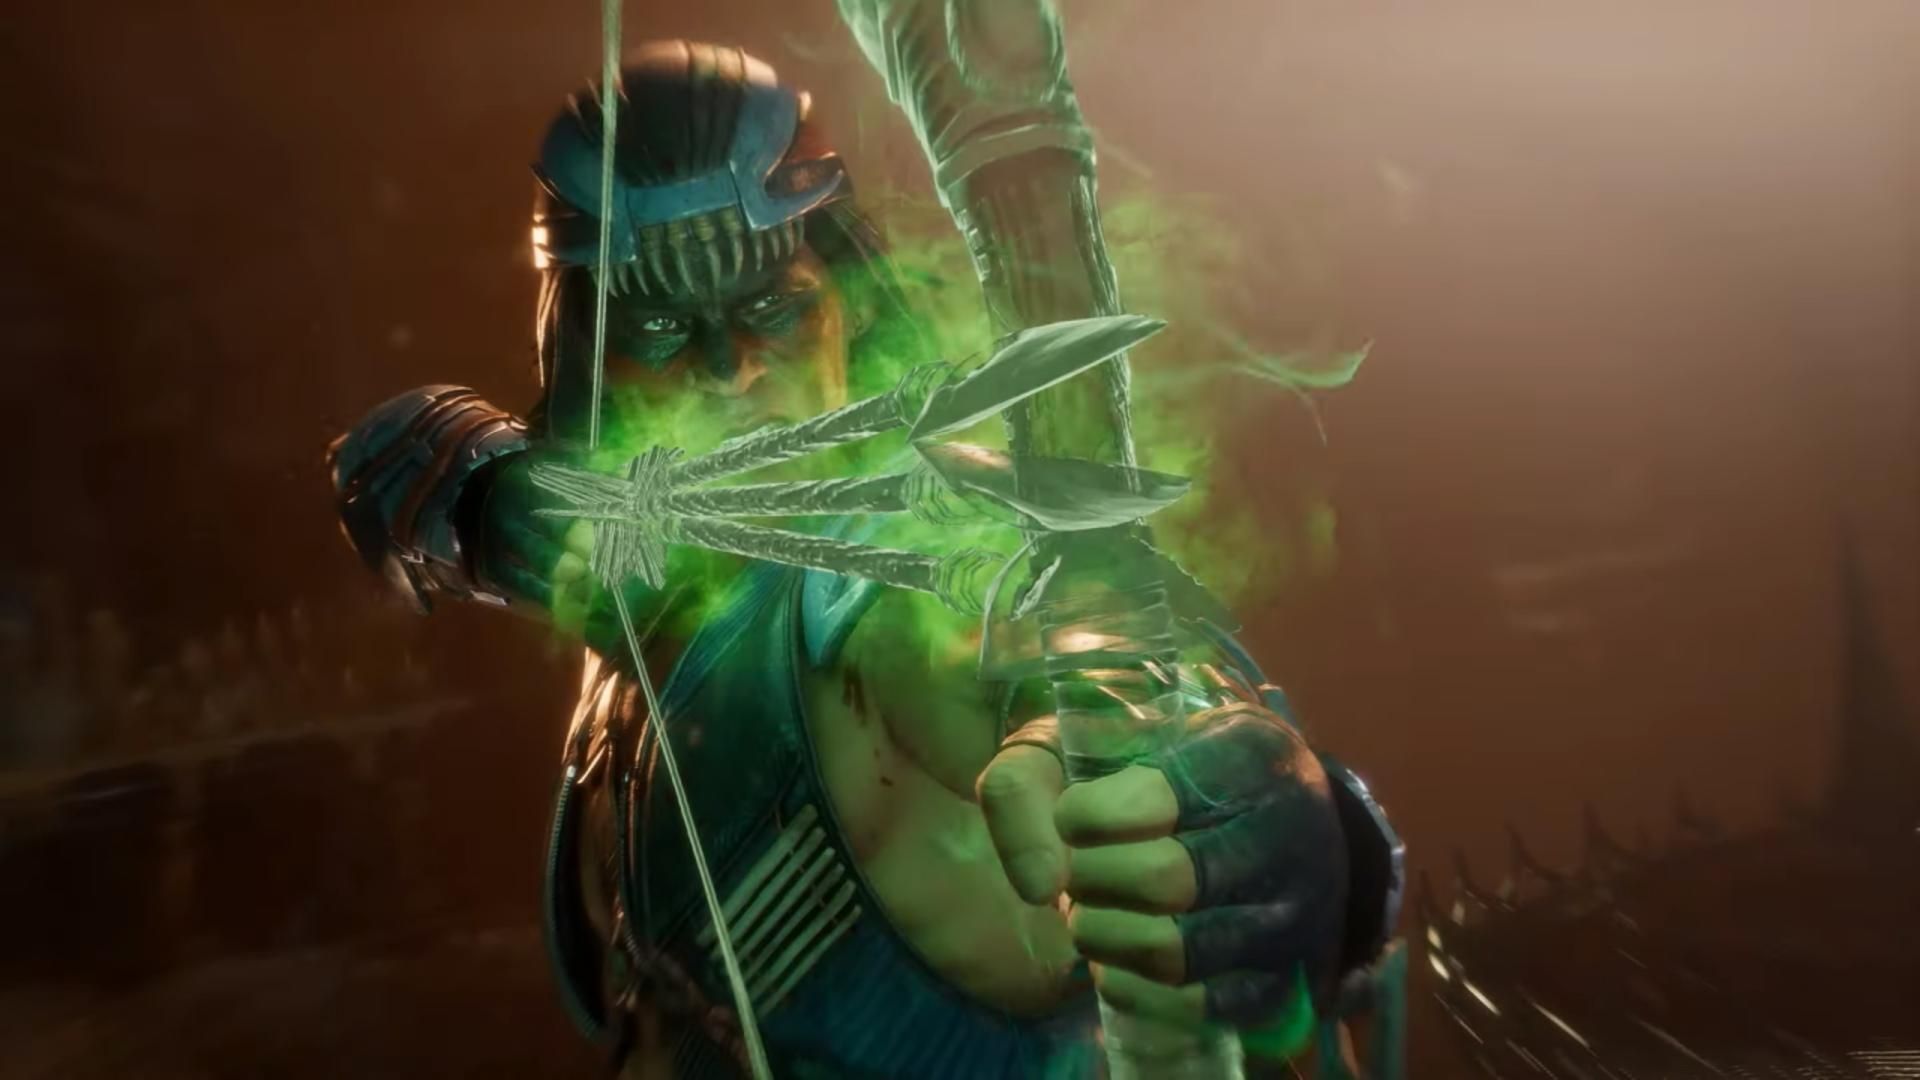 Mortal Kombat 11 Kombat Pack - Shang Tsung Gameplay Trailer